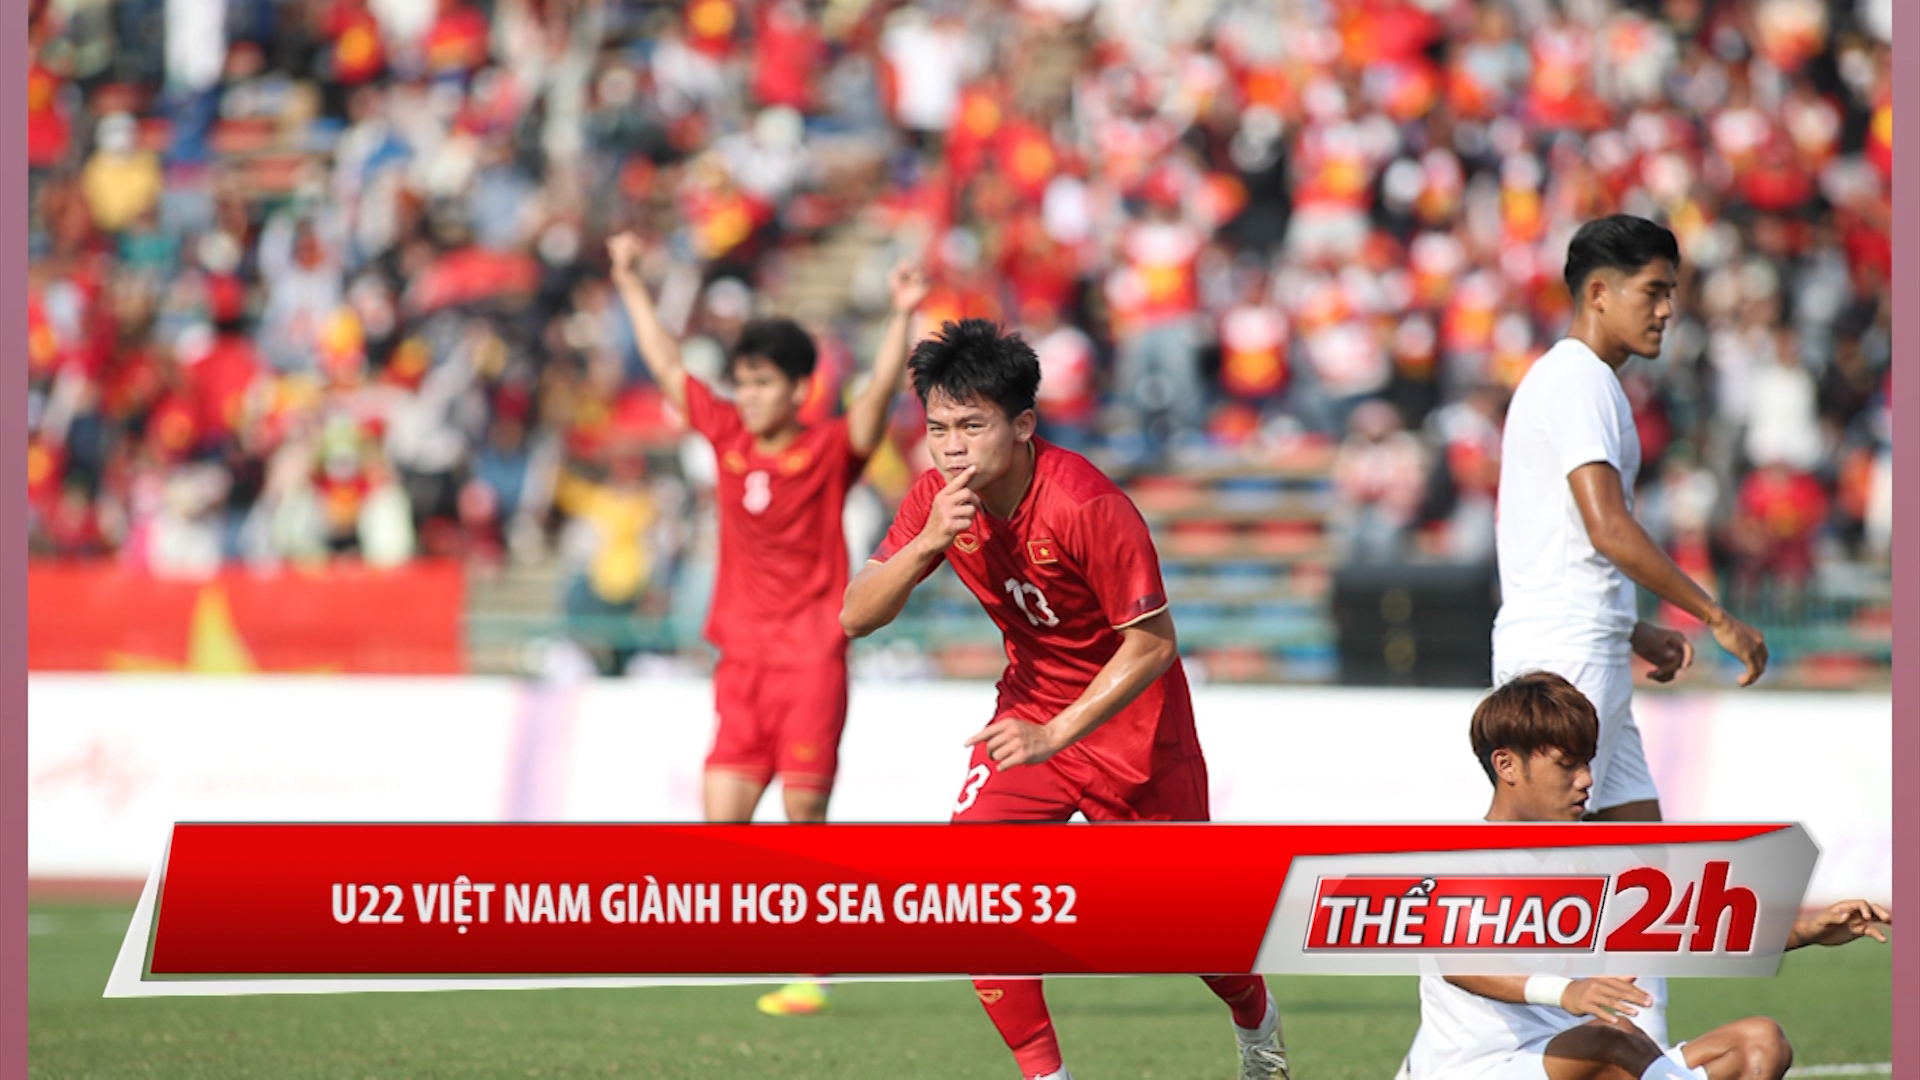 U22 Việt Nam giành huy chương Đồng SEA Games 32